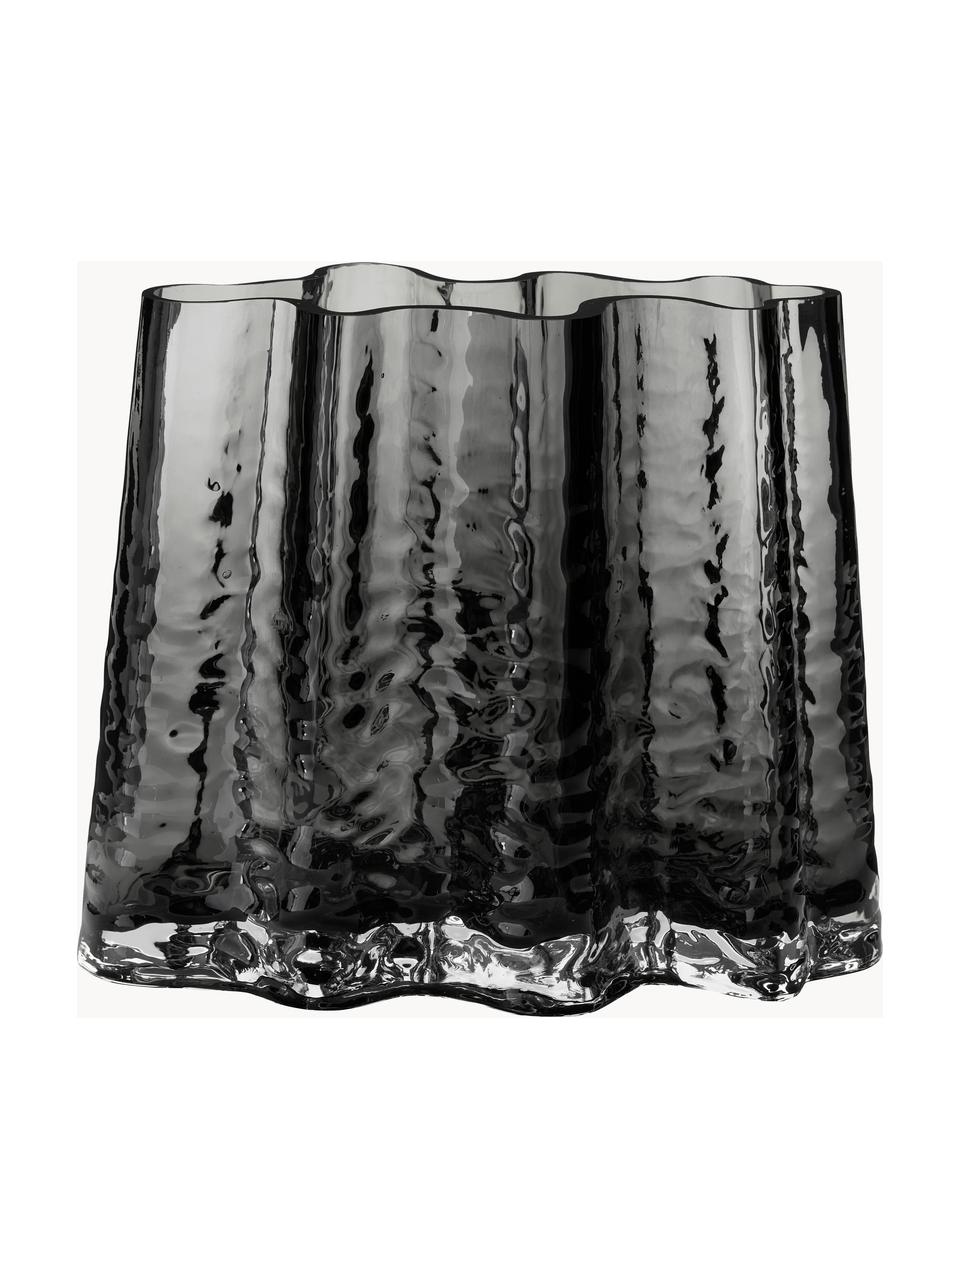 Mondgeblazen glazen vaas Gry met gestructureerde oppervlak, H 19 cm, Mondgeblazen glas, Antraciet, B 24 x H 19 cm